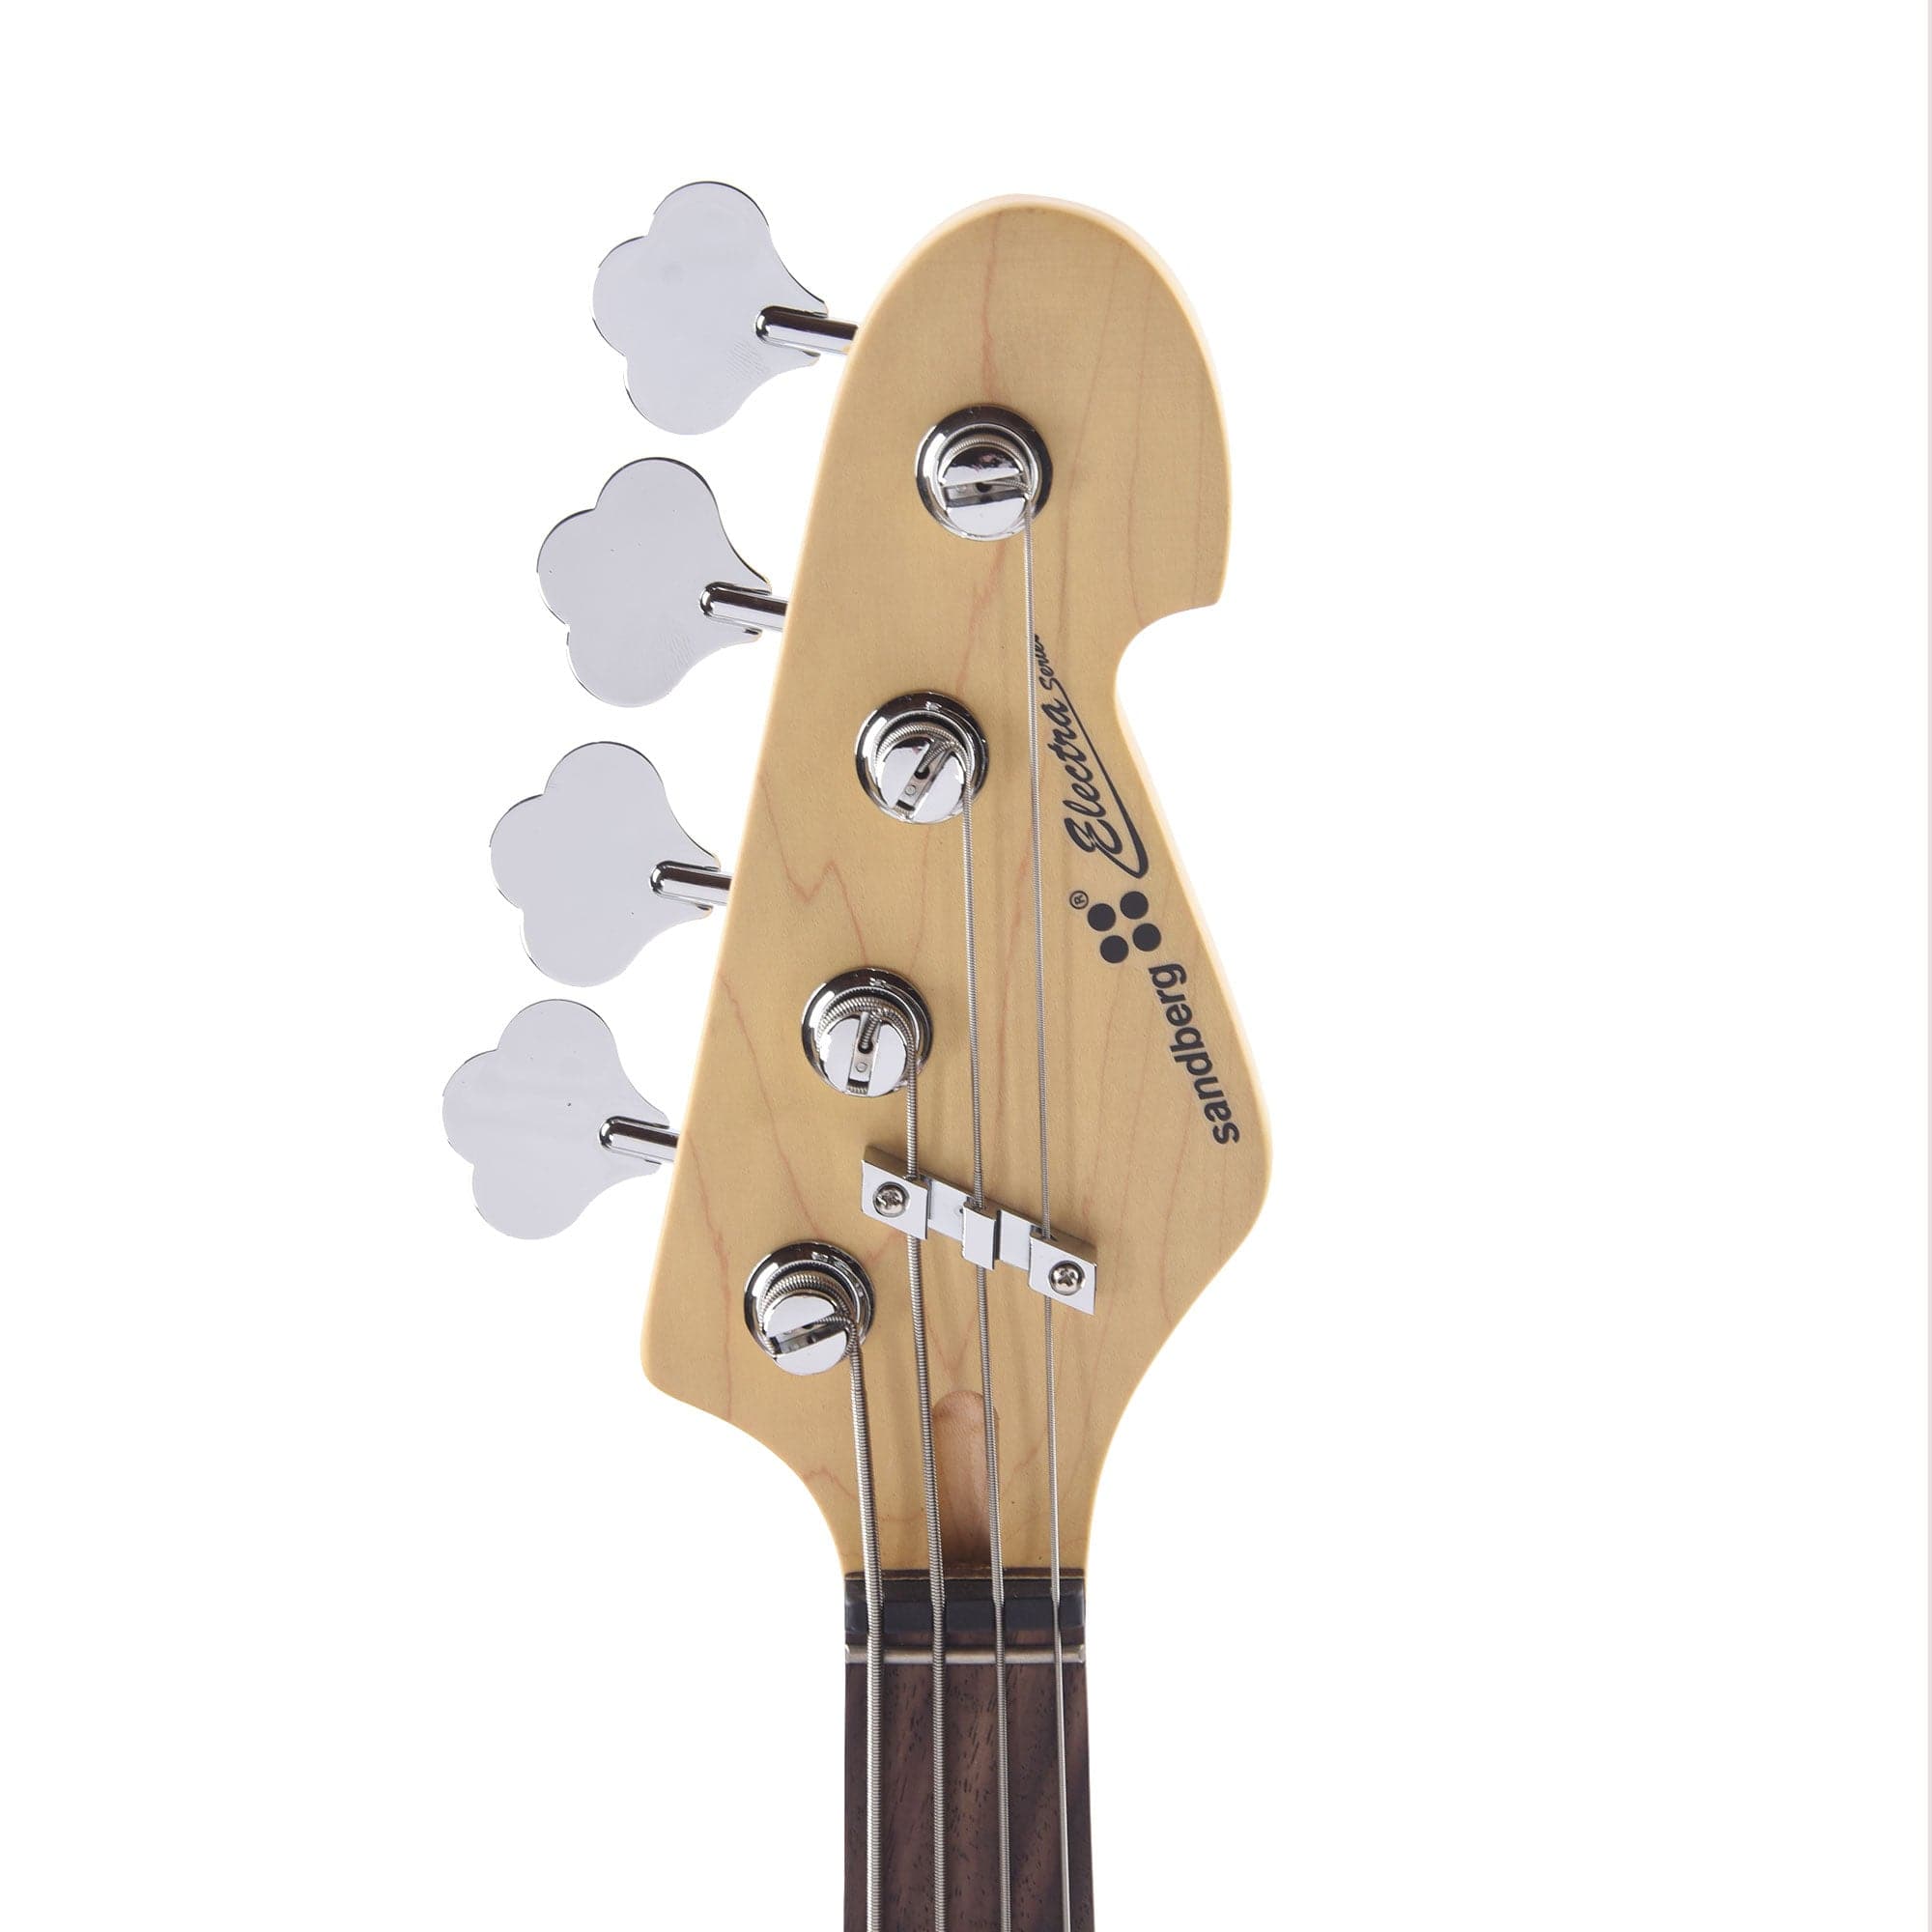 Sandberg Electra TT Creme High Gloss Bass Guitars / 4-String